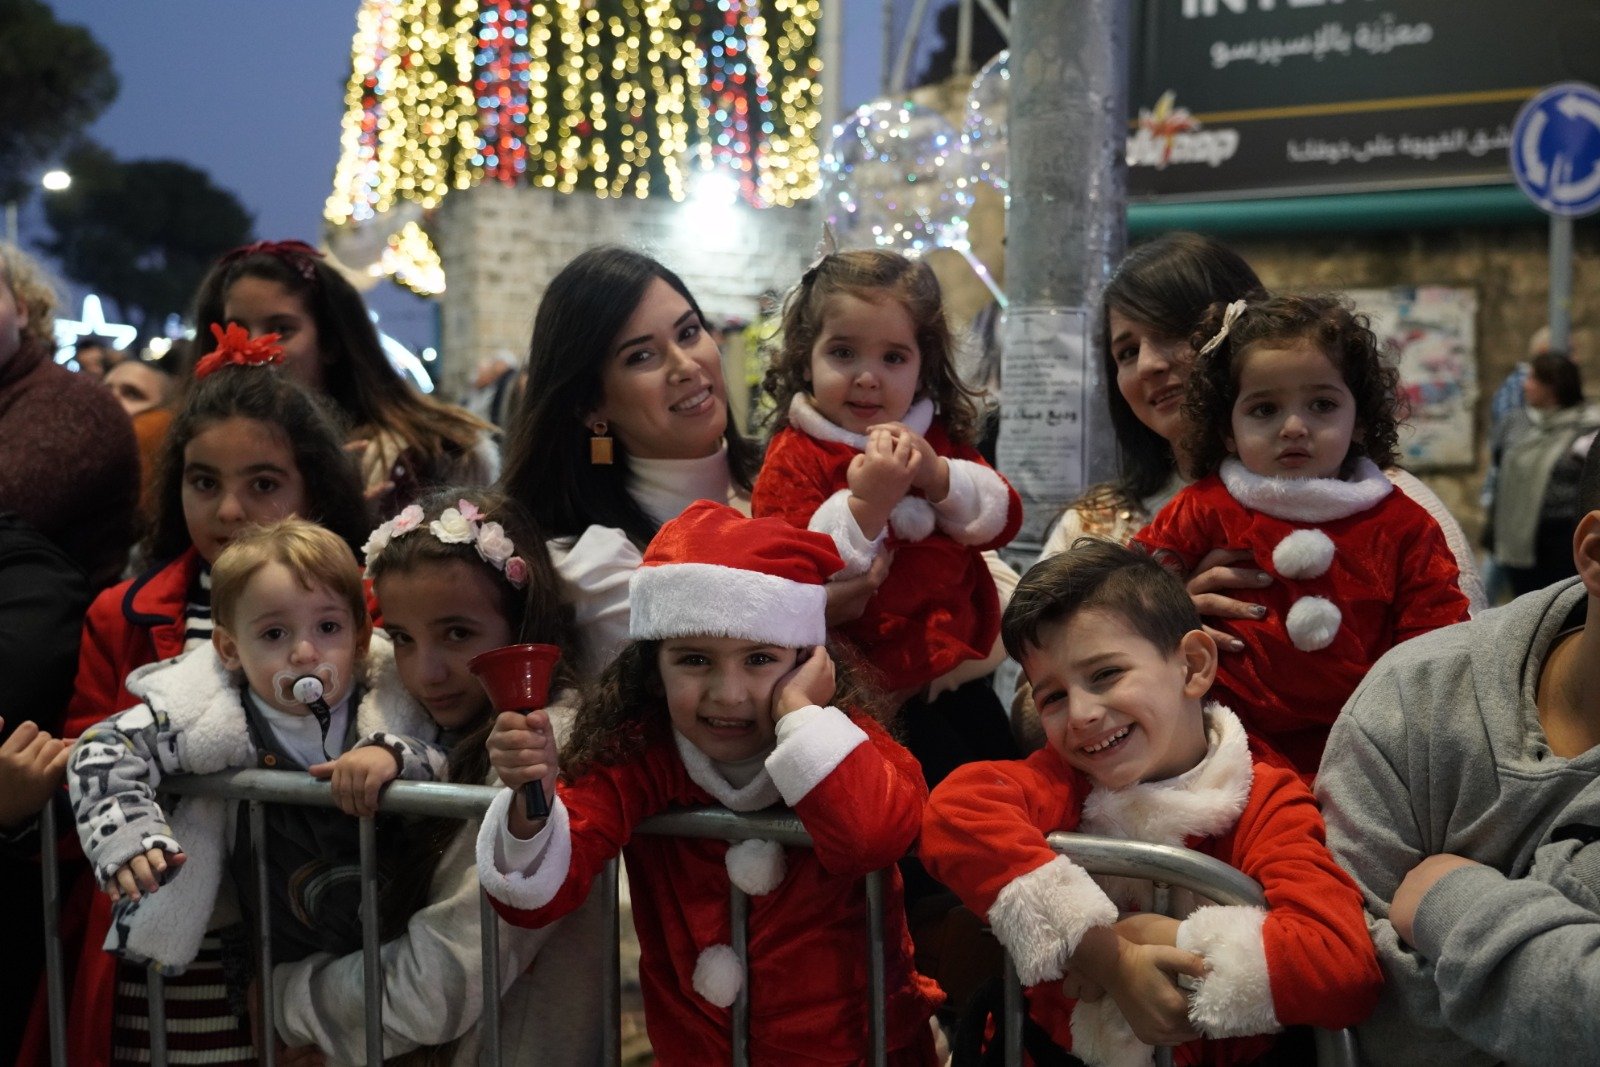 بالصور: "بكرا" يرصد فرحة استقبال الميلاد في الناصرة -229